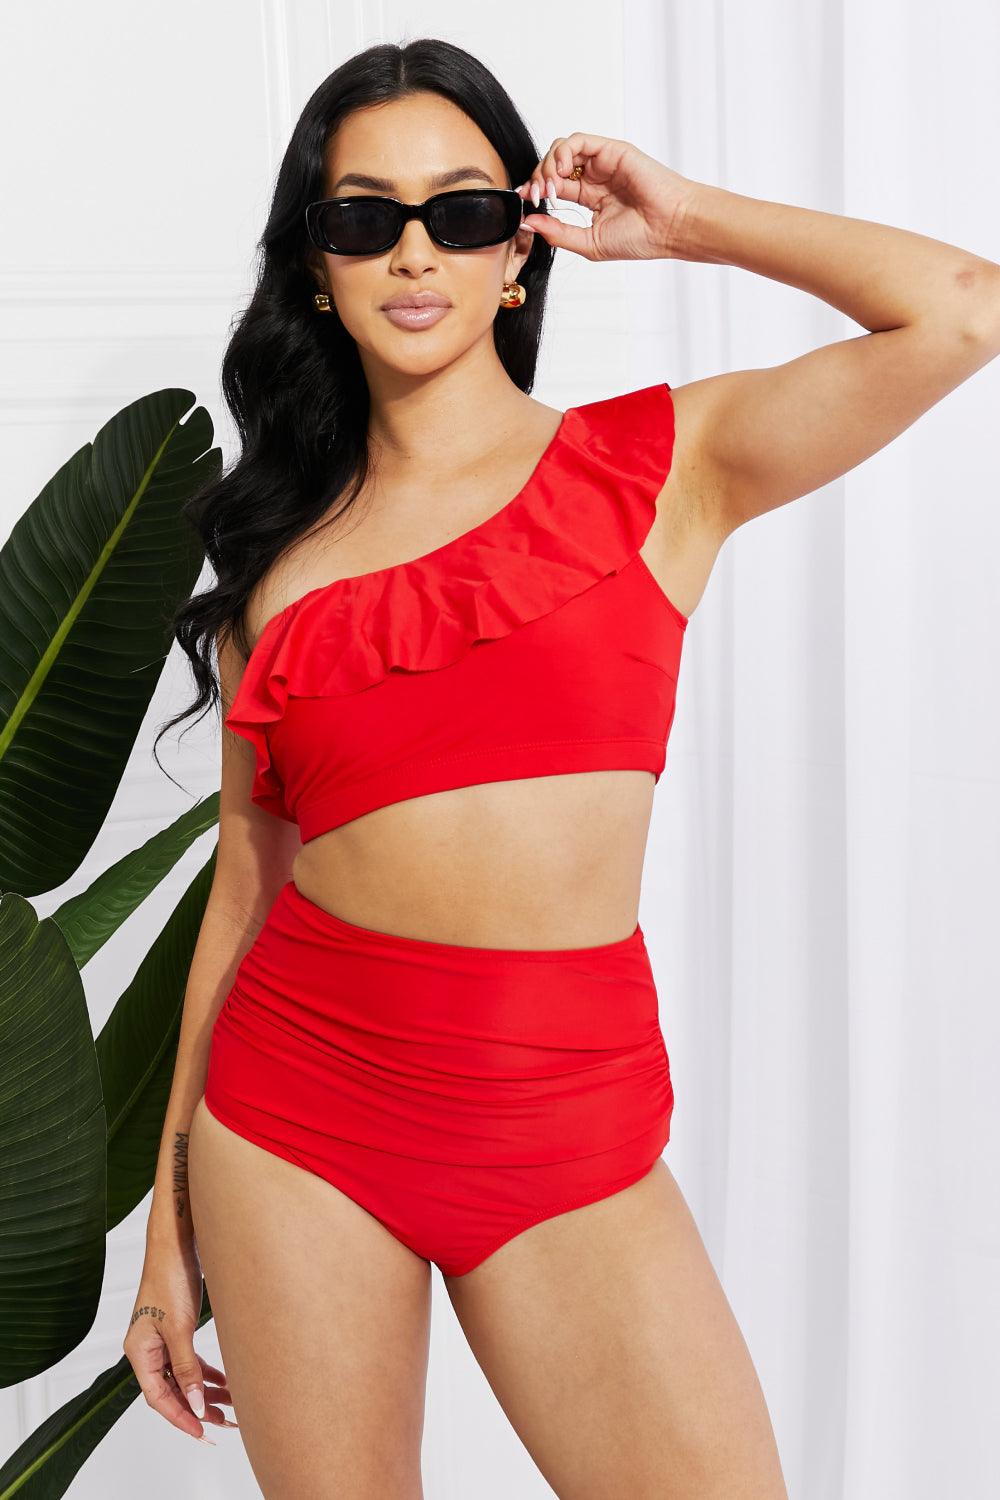 Hazel Blues® | Seaside Romance Ruffle One-Shoulder Bikini in Red - Hazel Blues®